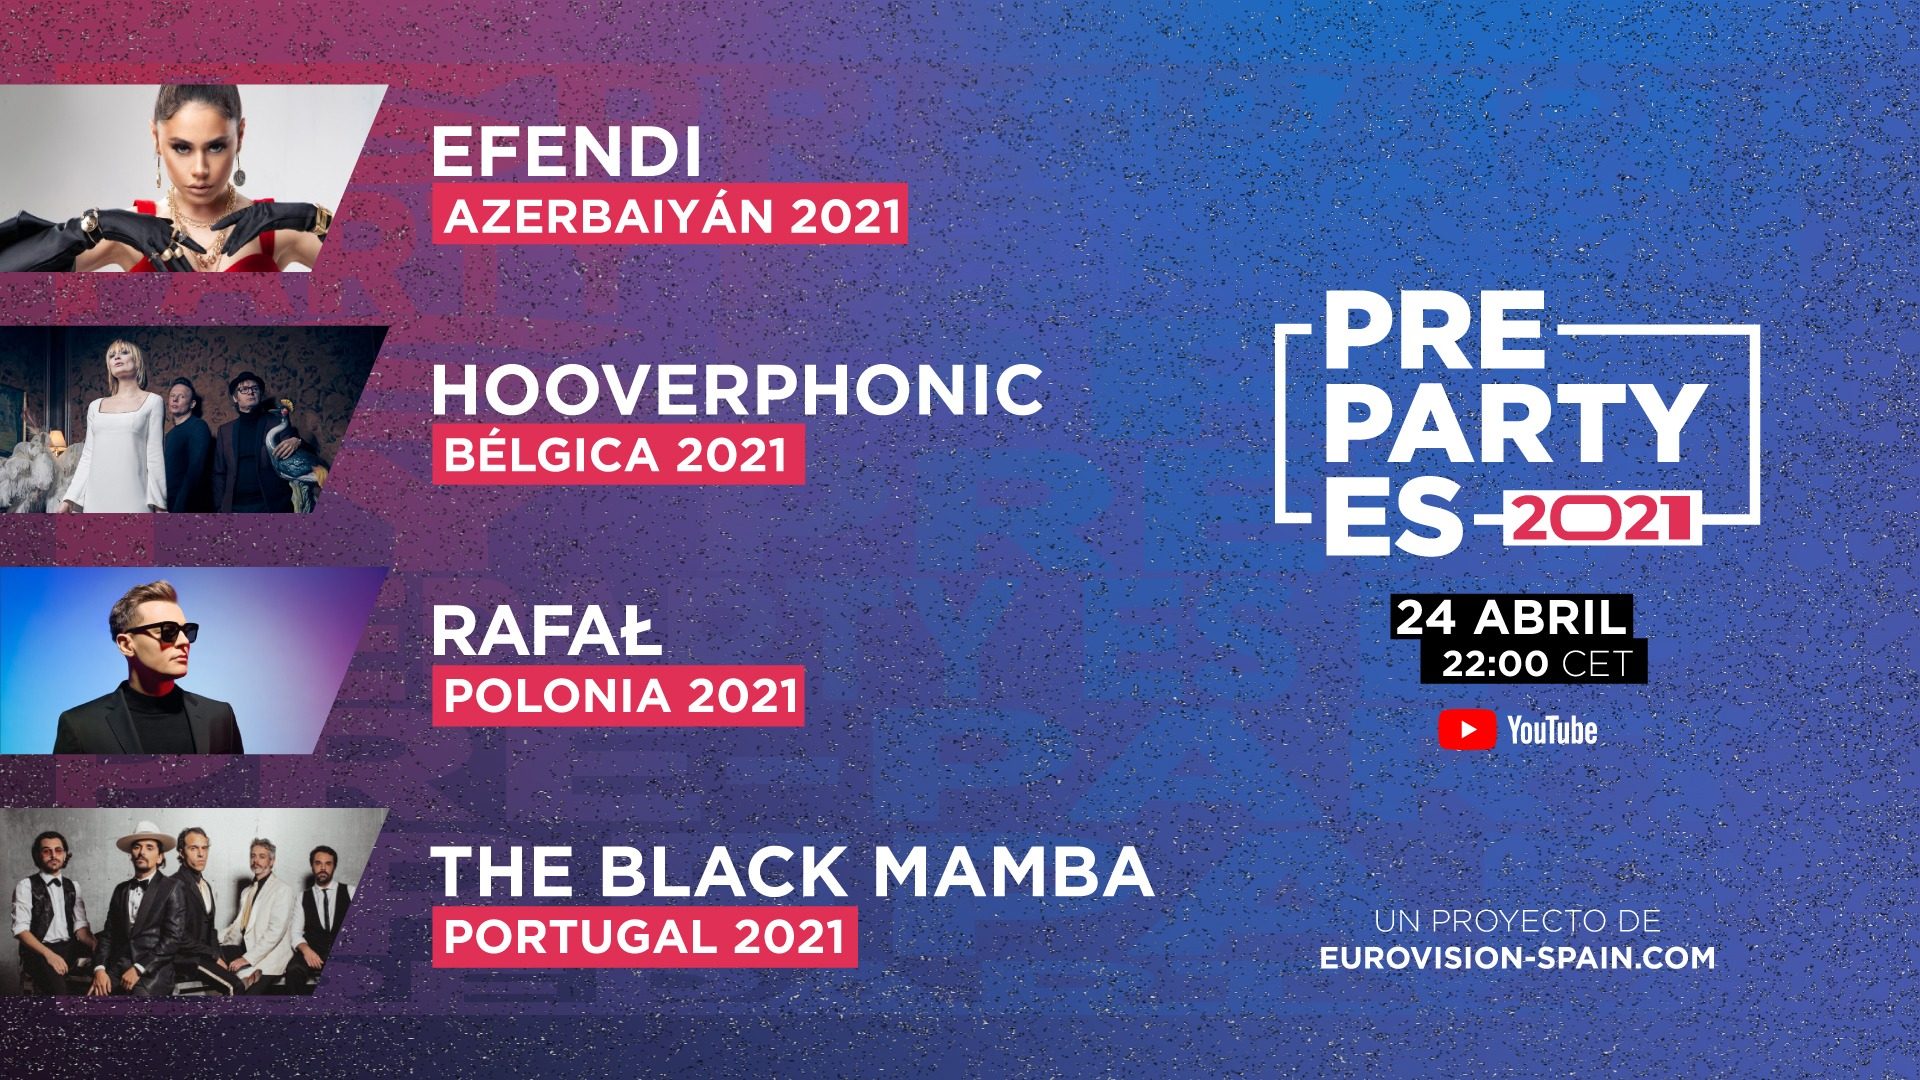 La PrePartyES suma ya 16 representantes de Eurovisión 2021 con Efendi, Hooverphonic, Rafal y The Black Mamba